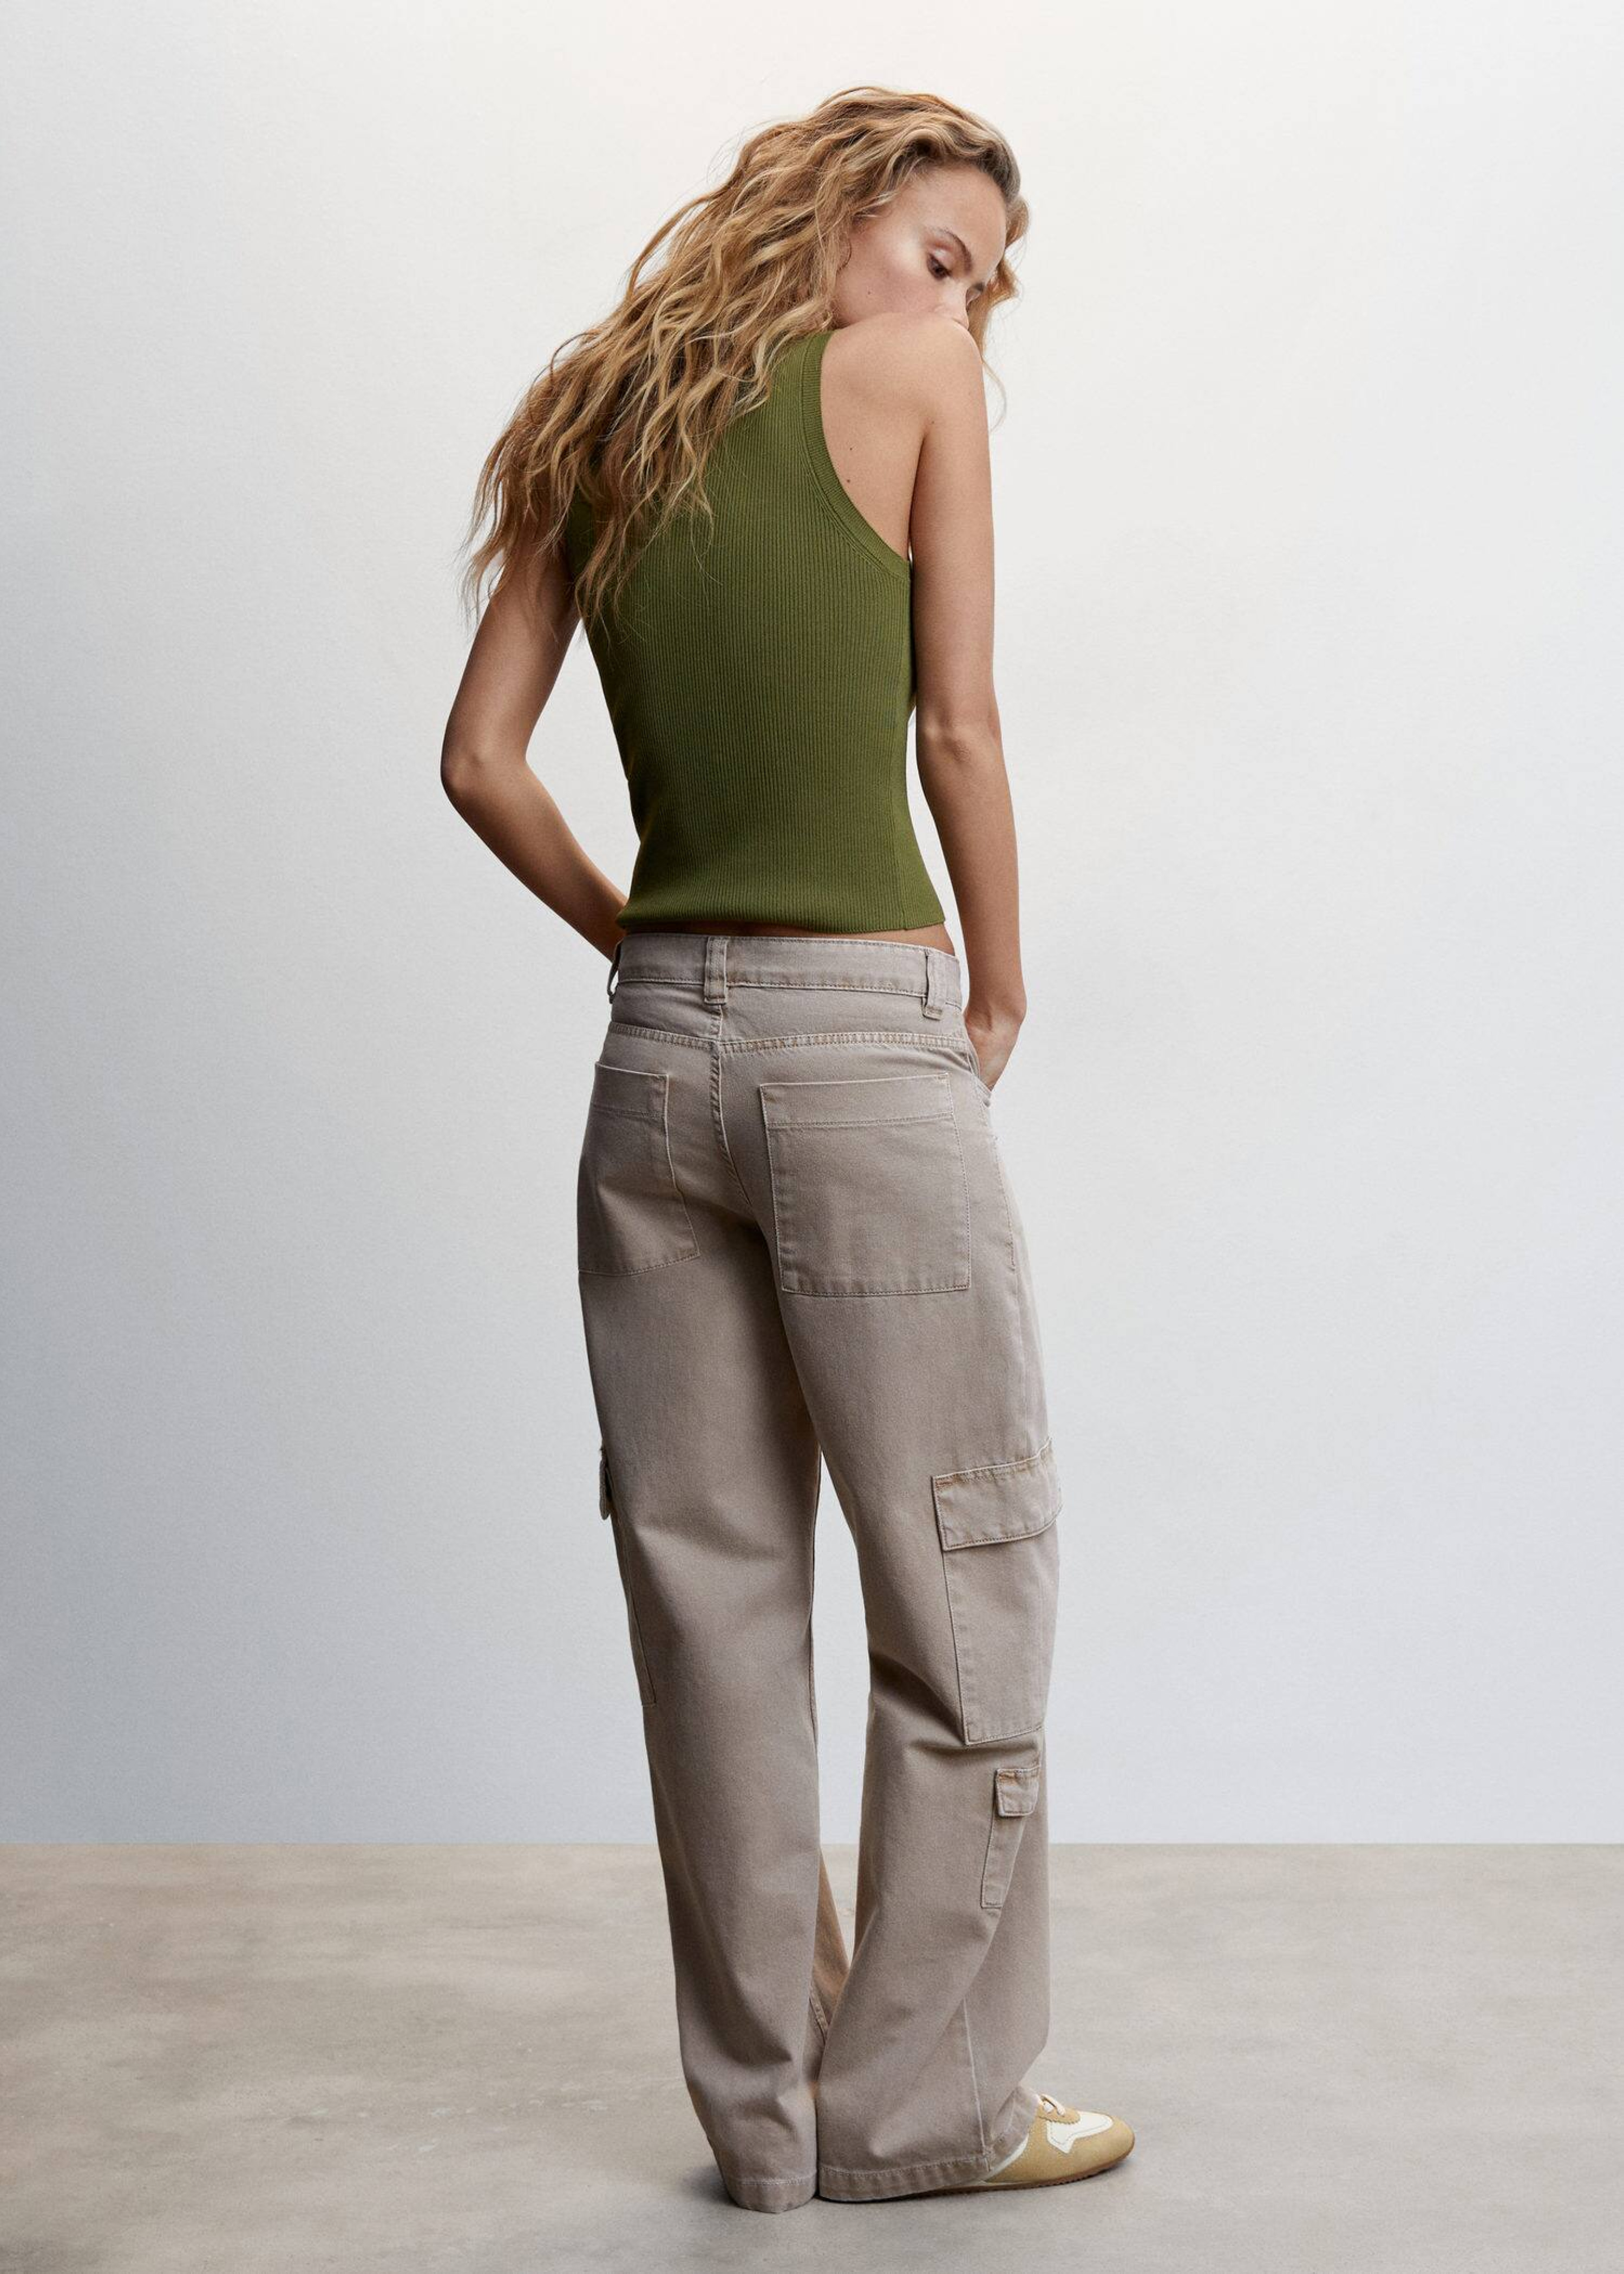 Mujer combinando pantalones cargo beige con un top verde.